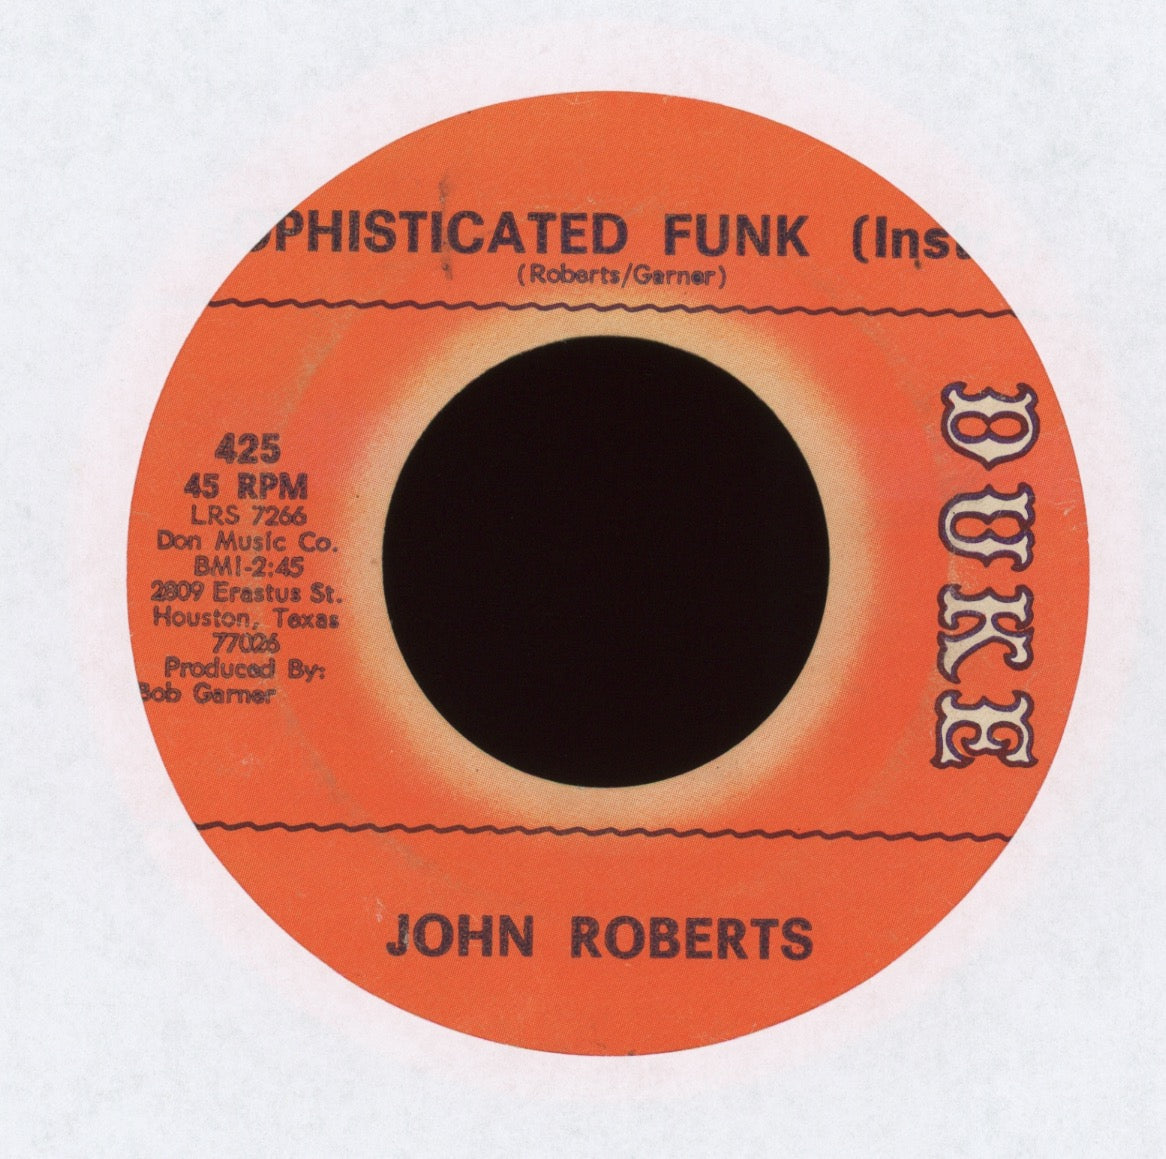 John Roberts - Sockin' 1-2-3-4 on Duke